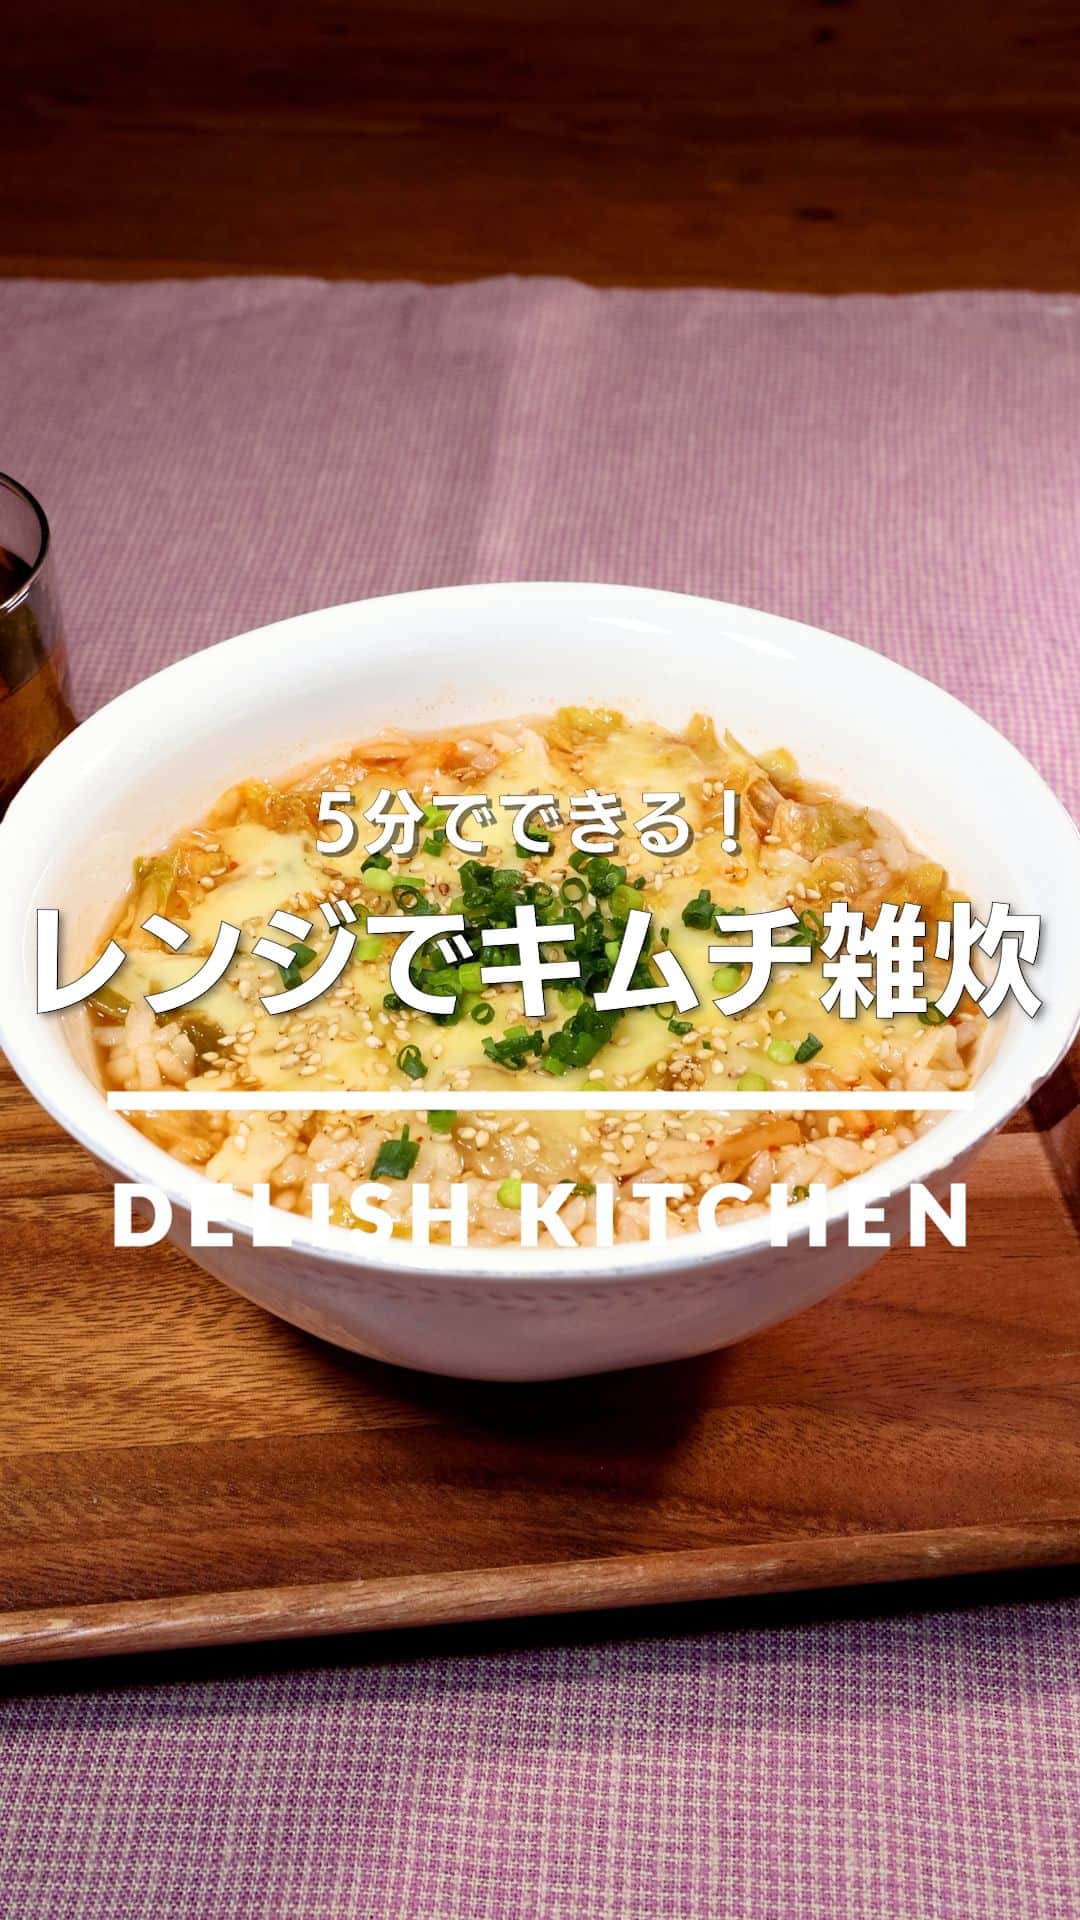 DELISH KITCHENのインスタグラム：「「レンジでキムチ雑炊」 ⠀⠀ 簡単に済ませたい時や夜食におすすめ！レンジで作る簡単雑炊レシピです。お好みで水の半量を豆乳にしても少し濃厚で違った味わいを楽しめます♪ ⠀⠀ ★┈┈┈┈┈┈┈┈┈┈┈┈★ au5Gチャンネルでも、その他様々なDELISH KITCHENの簡単レシピを配信中！ 詳しくは @delishkitchen.tv ハイライトから♪ ★┈┈┈┈┈┈┈┈┈┈┈┈★ ⠀⠀ 動画を一時停止したい場合は、画面を長押ししてください！ ⠀⠀ 動画の詳細が気になる人はアプリで「レンジでキムチ雑炊」で検索してみてくださいね♪ ⠀⠀ ■材料 (1人分) ・ごはん　お茶碗1杯(150g) ・ピザ用チーズ　15g ・キムチ　30g ・水　200cc ・しょうゆ　小さじ1 ・ごま油　小さじ1/2 ・白いりごま　適量 ・細ねぎ(刻み)　適量 ⠀⠀ ■手順 (1)耐熱容器にごはん、キムチ、水、しょうゆ、ごま油を入れて混ぜる。ふんわりとラップをし600Wのレンジで2分加熱する。 (2)ピザ用チーズを加えて再びふんわりとラップをし、600Wのレンジで1分加熱する。(ごはんや水の温度で多少加熱時間が変わります。ぬるい時は600Wのレンジで30秒ほどから様子を見て追加で加熱してください。) (3)白いりごま、細ねぎをちらす。(器が熱くなっているので注意してください。 キムチの味によって変わるので、お好みで塩少々を加えて調整してお召し上がりください。) ⠀⠀ #デリッシュキッチン #DELISHKITCHEN #料理 #レシピ #時短 #おうちごはん #手料理 #簡単レシピ #手作りごはん #今日のごはん #おうちカフェ #キムチ雑炊 #レンジで簡単」